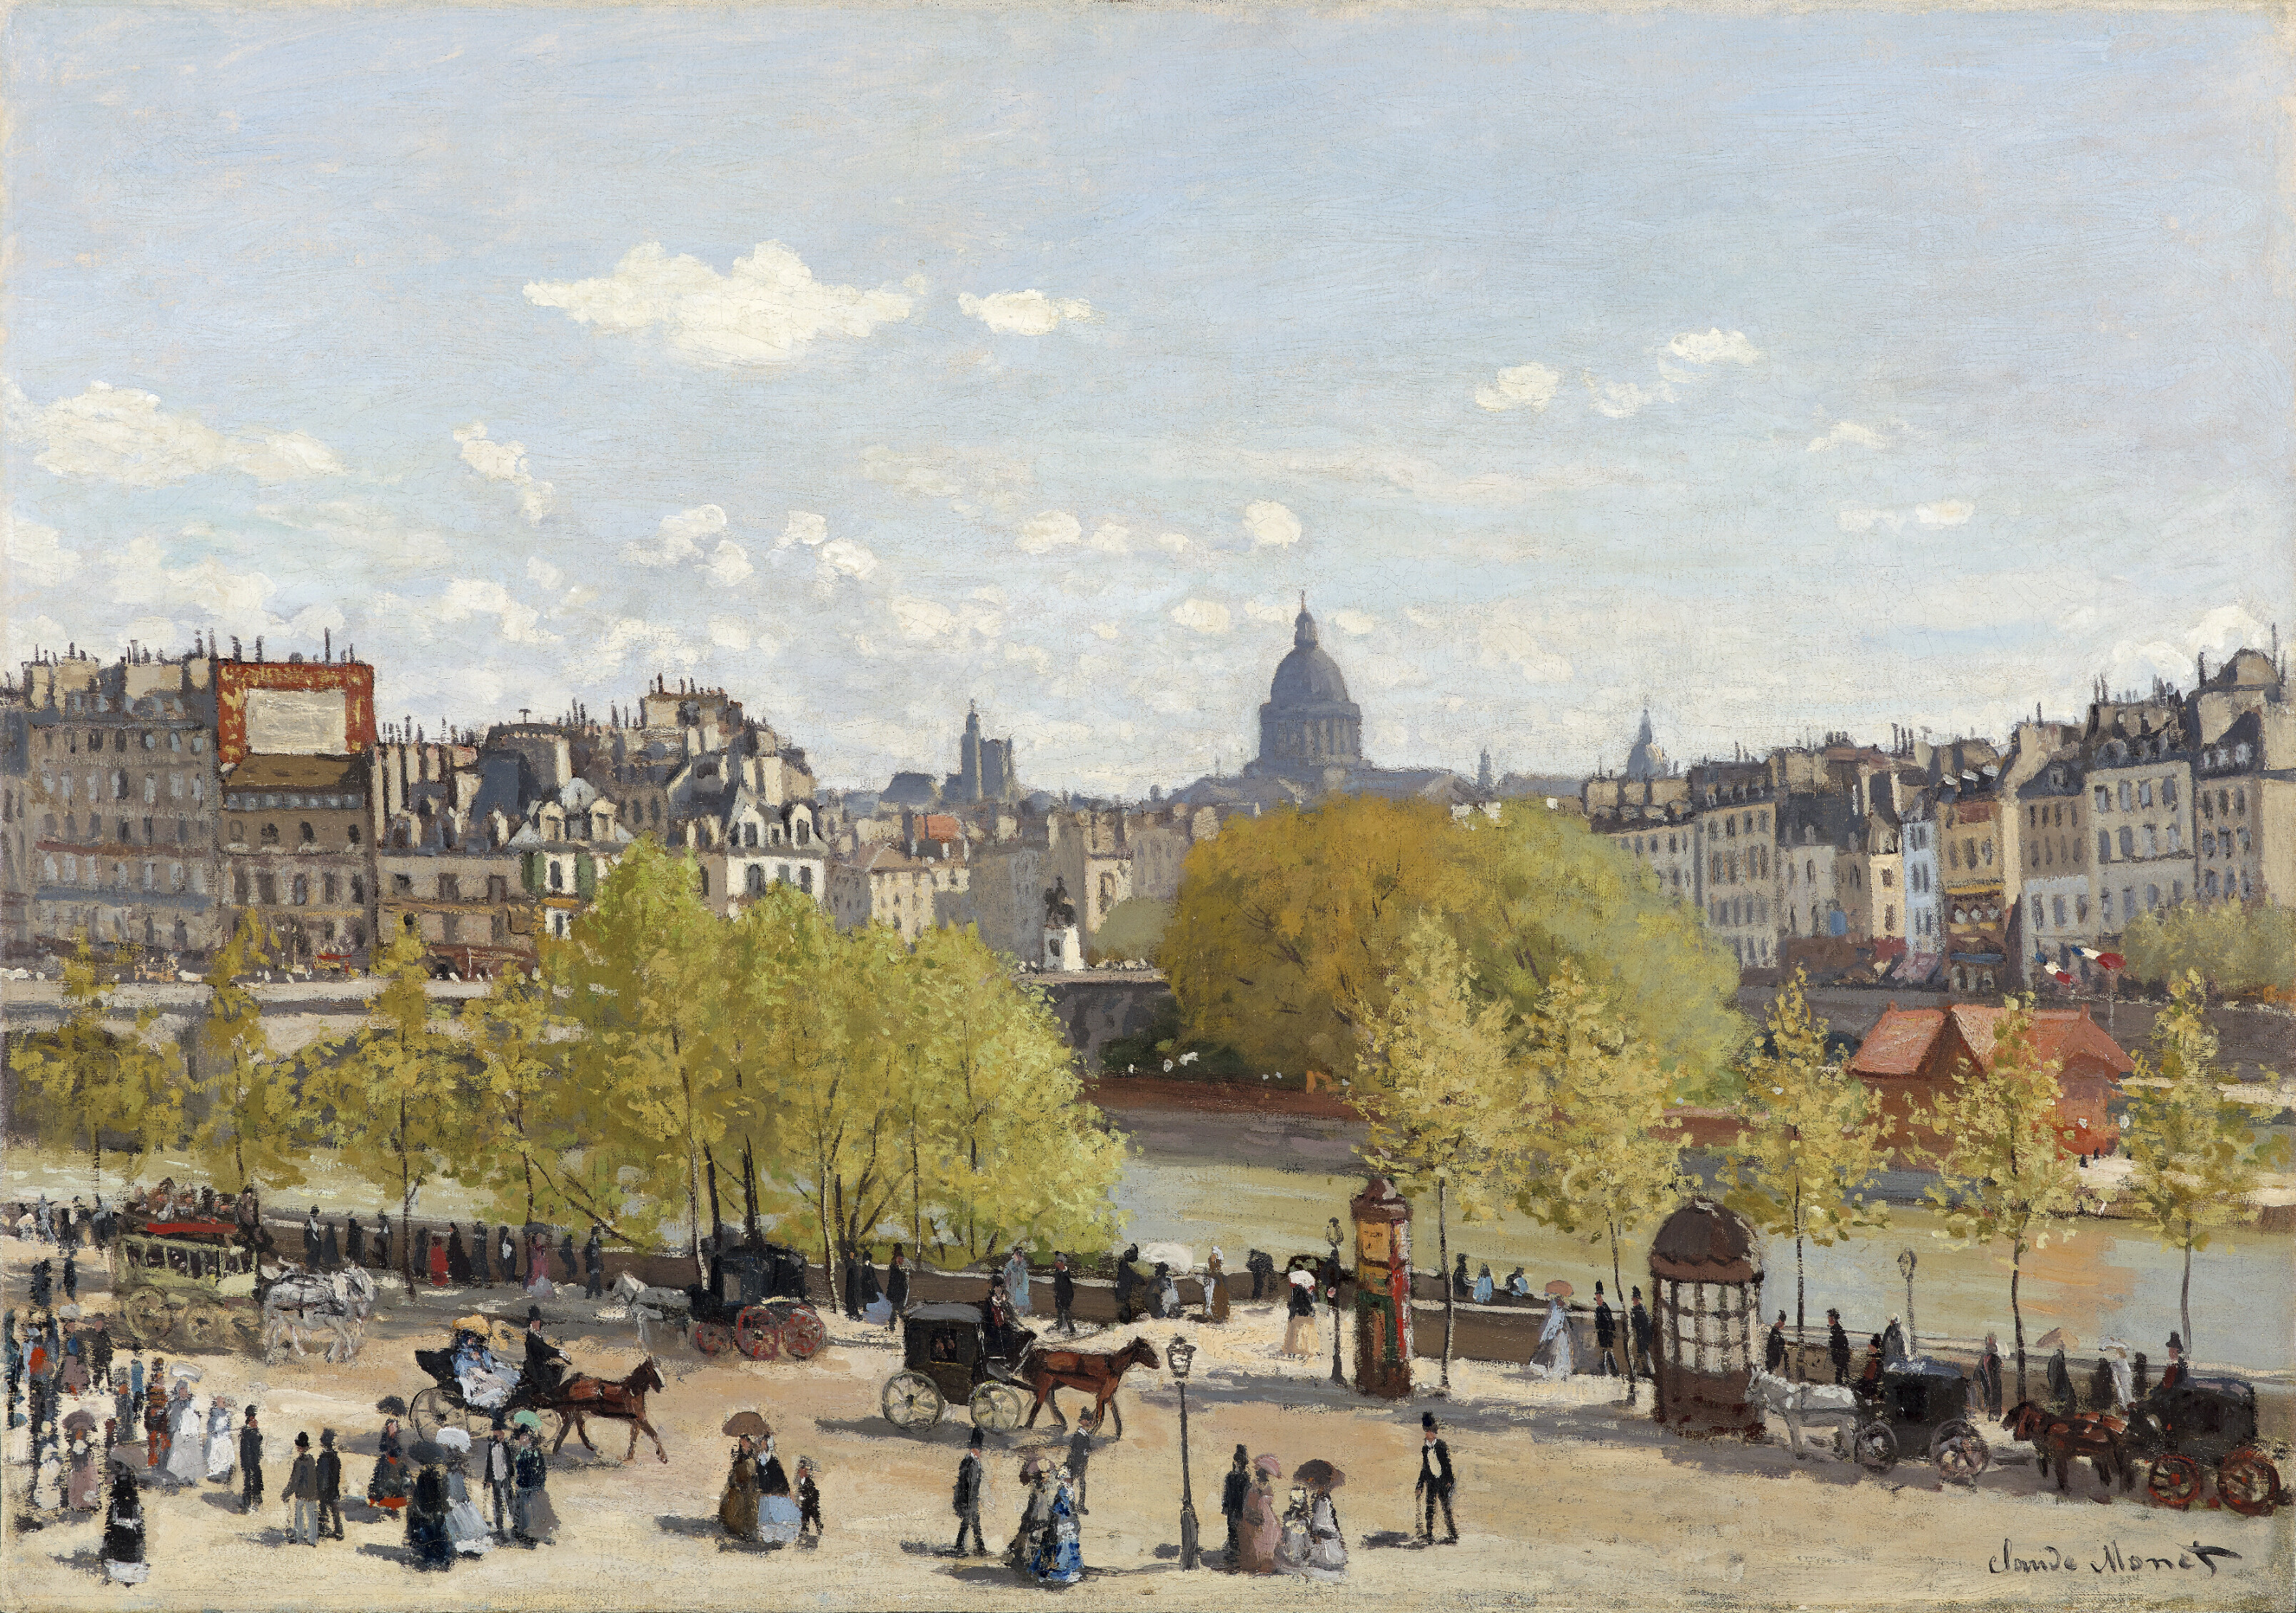 《ルーヴル河岸》1867年頃 油彩、カンヴァス 65.1×92.6cm デン・ハーグ美術館